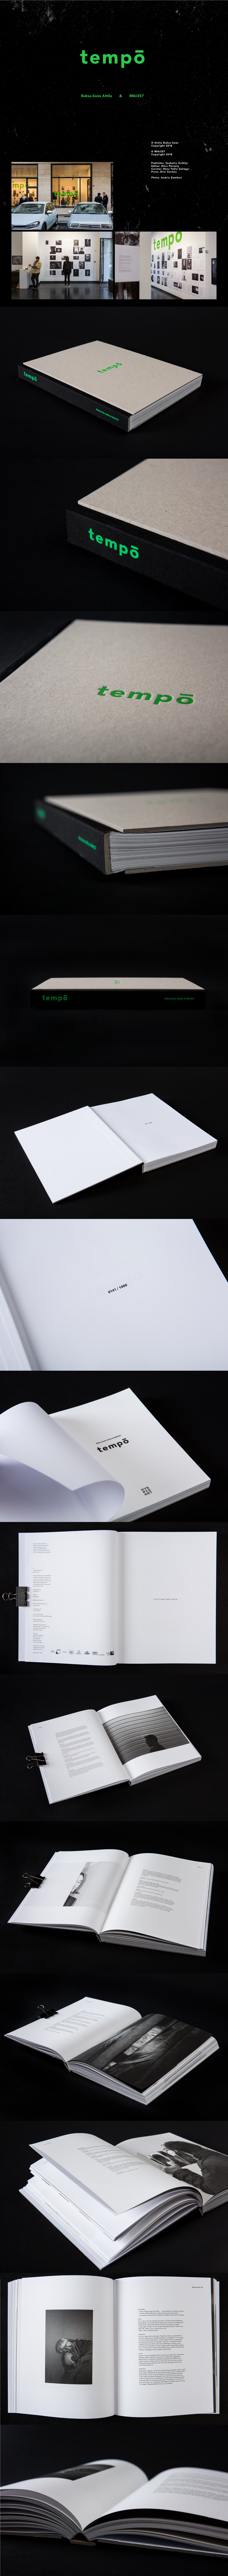 editorial design  minimal book music protrait green black White cover contemporary